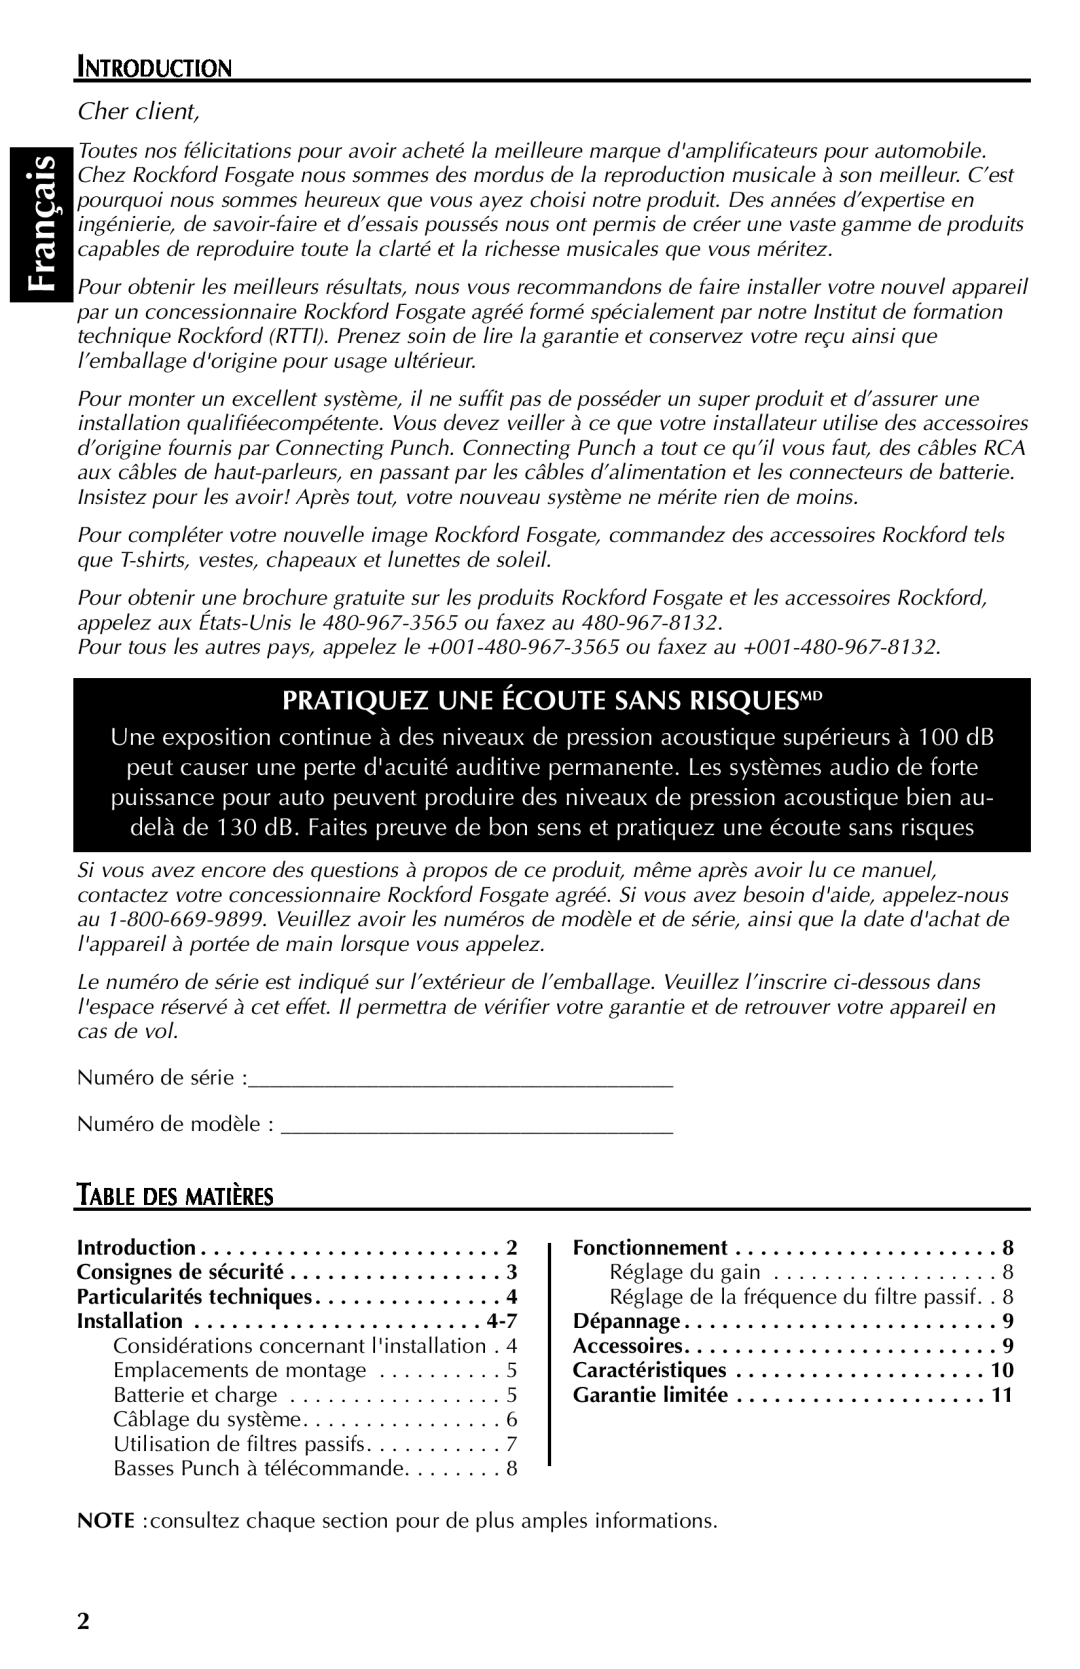 Rockford Fosgate 351M manual Français, Pratiquez Une Écoute Sans Risquesmd, Introduction, Cher client, Table Des Matières 